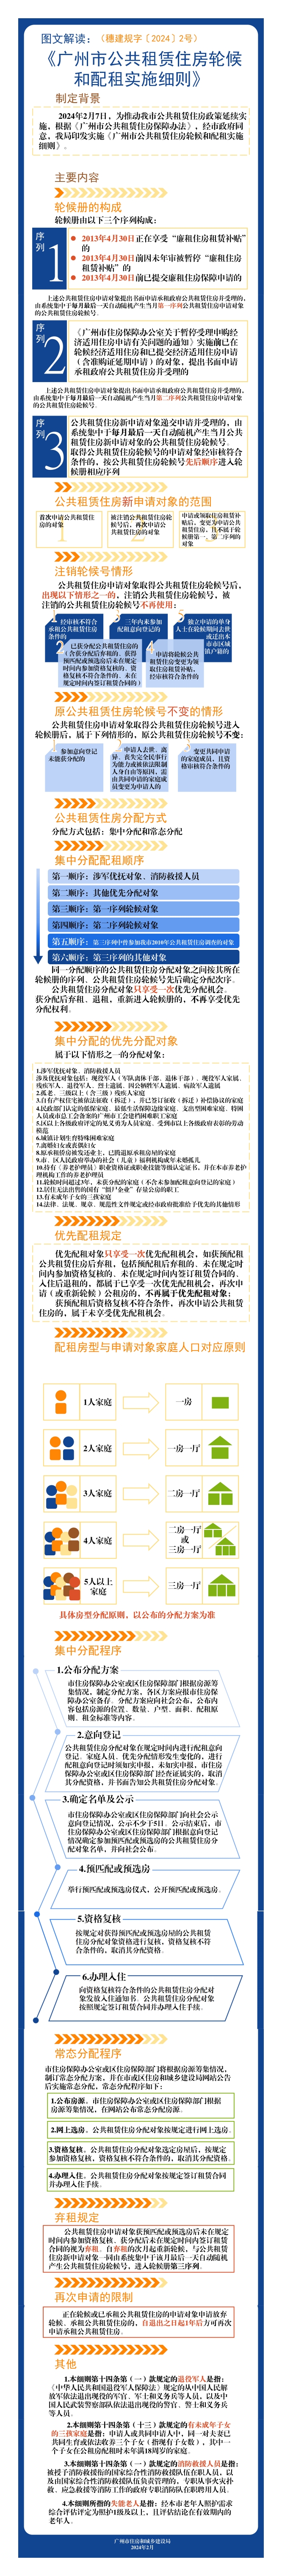 《广州市公共租赁住房轮候和配租实施细则》政策解读（图文版）.jpg